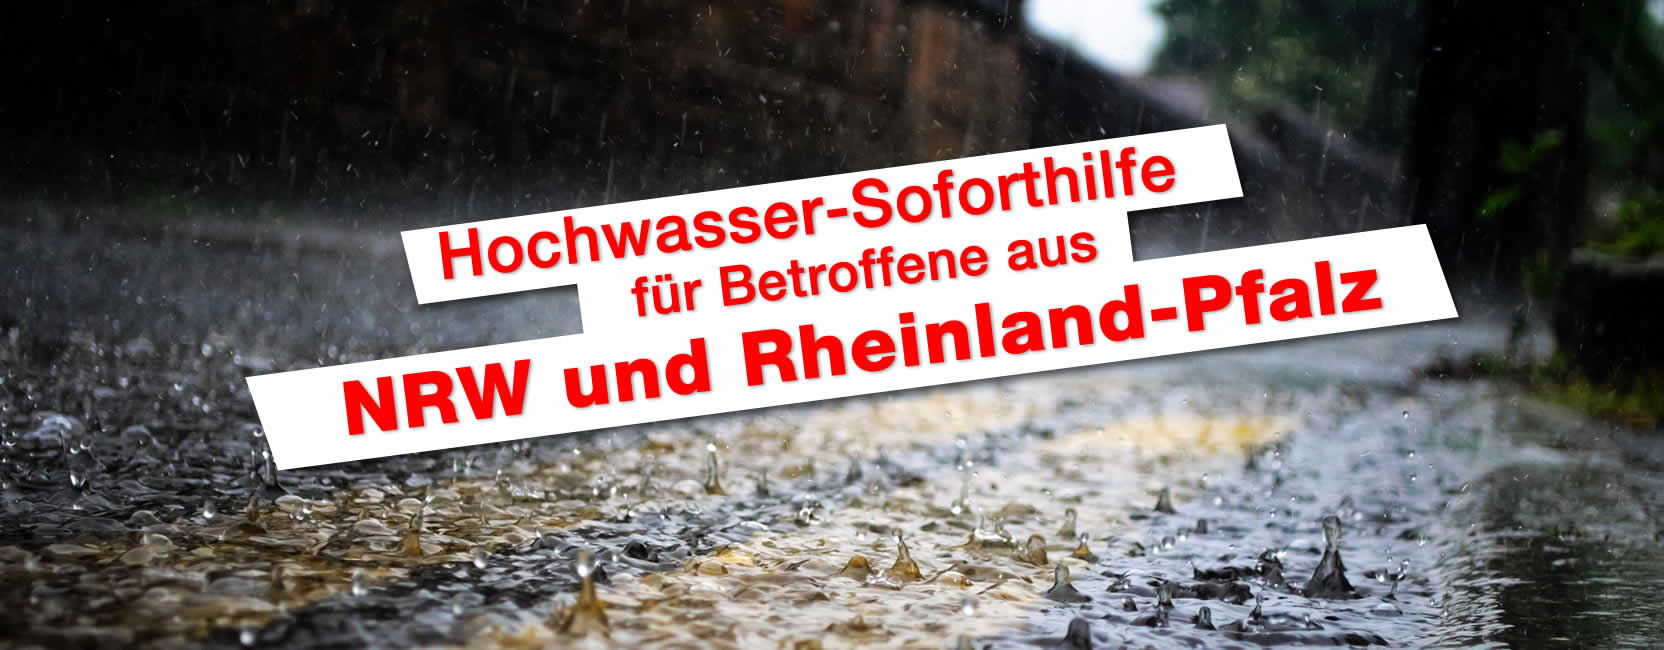 Hochwasser-Soforthilfe für alle Betroffenen aus NRW und Rheinland-Pfalz